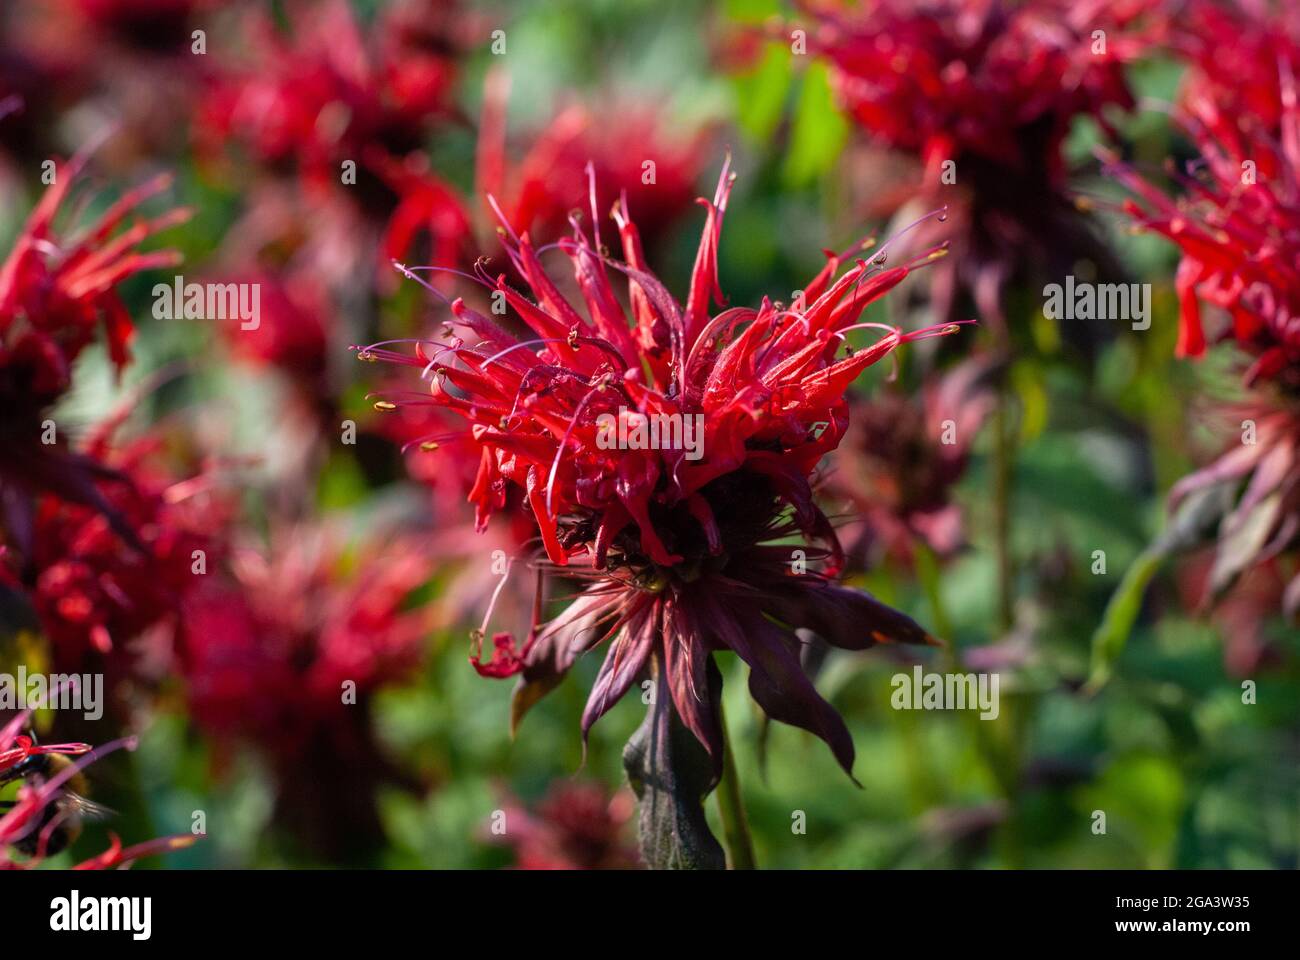 Beebalm flowering plant - Monarda didyma red flowers, closeup Stock Photo